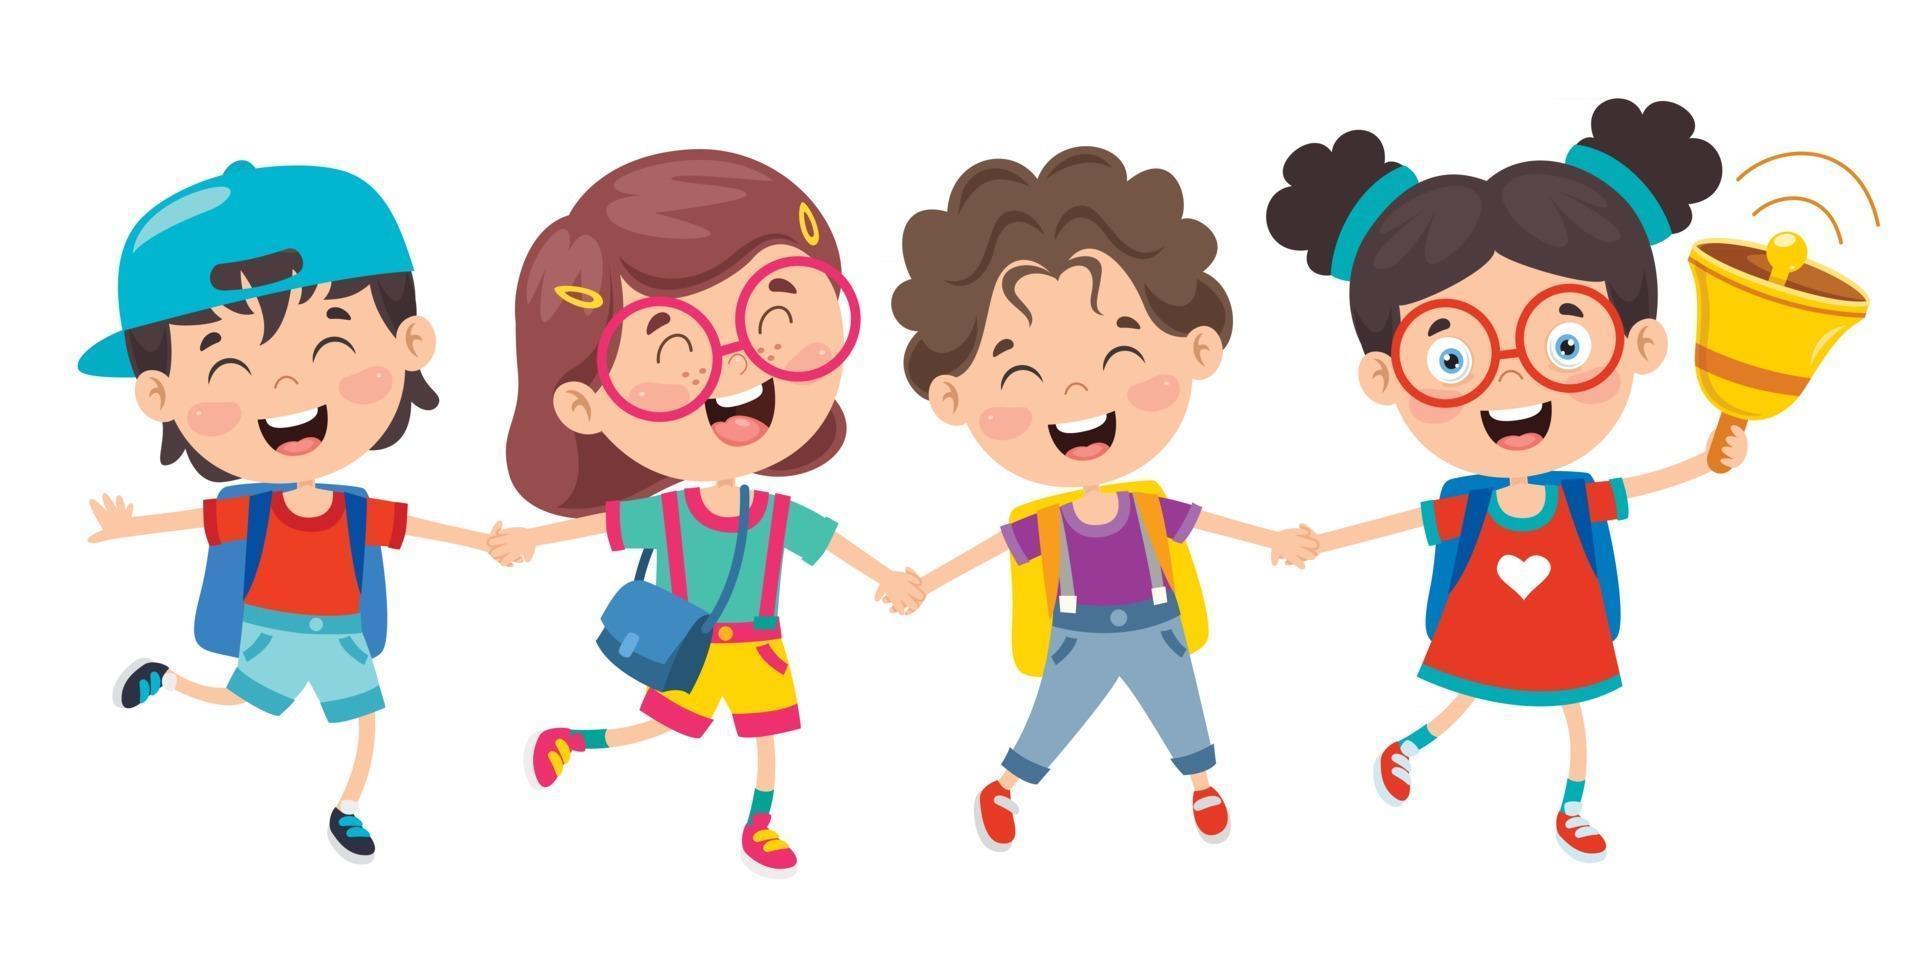 Happy Cute Cartoon School Children vector